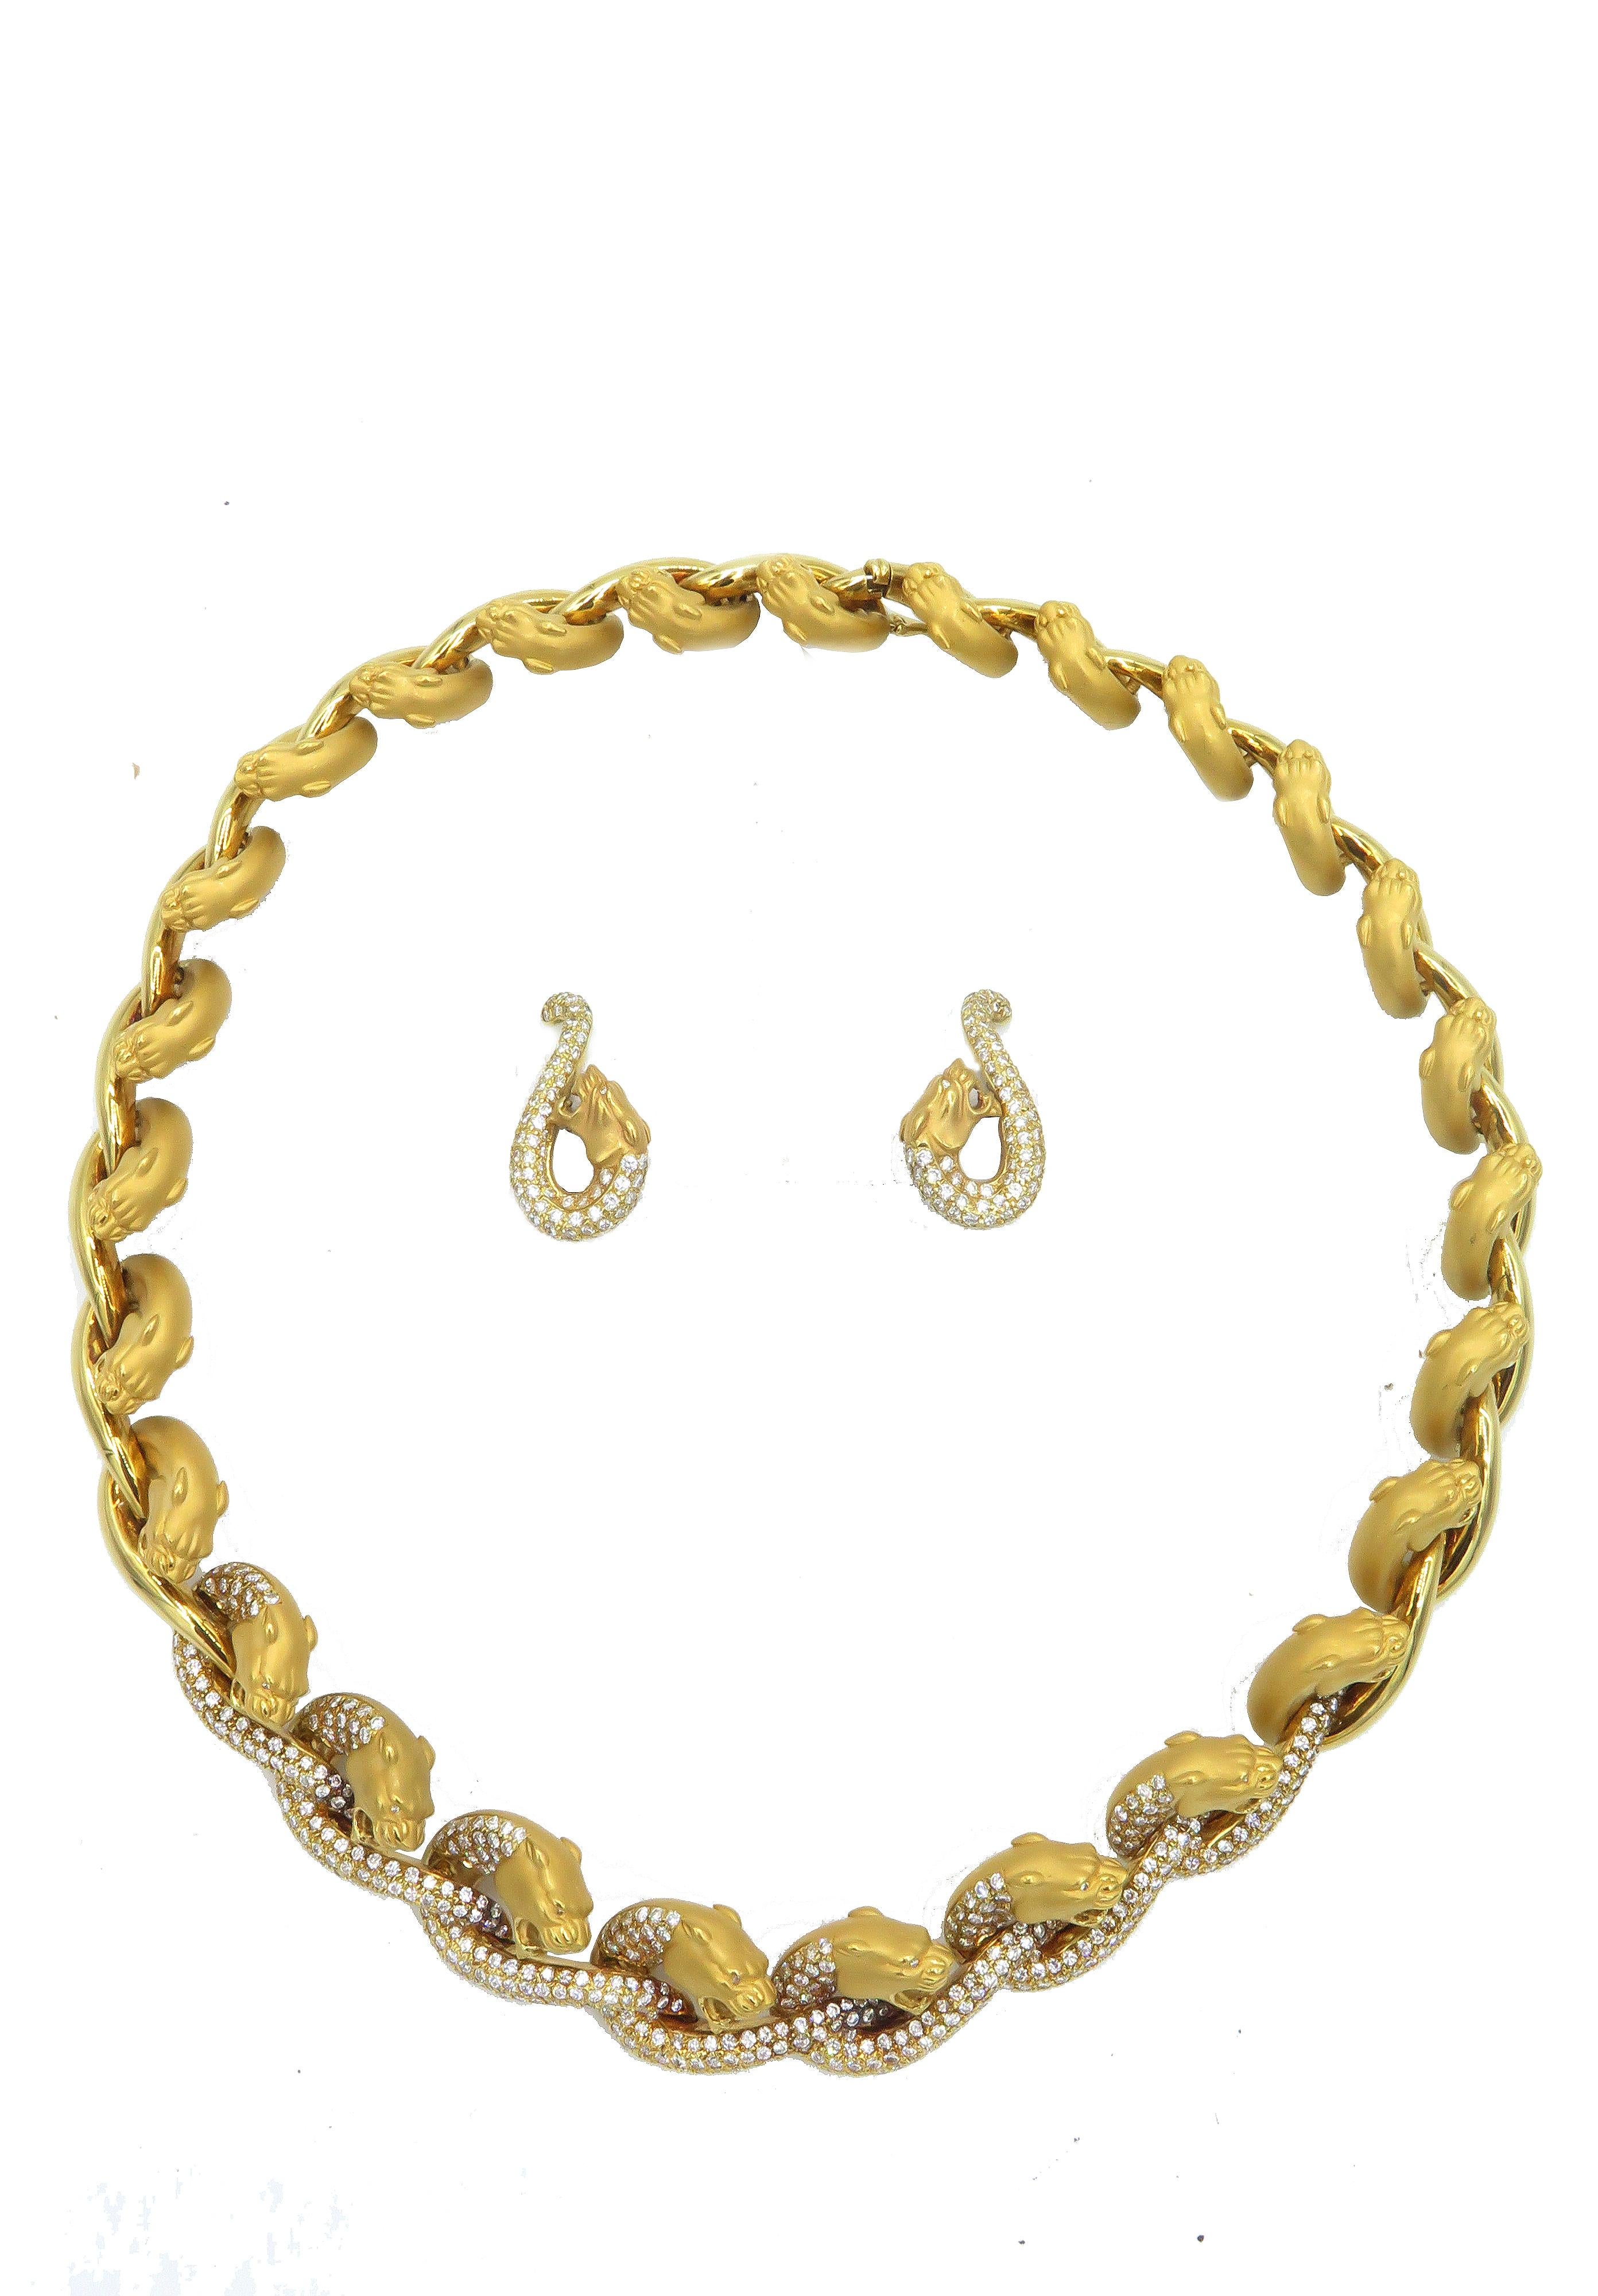 Si vous aimez l'éclat doré de l'or espagnol, vous serez séduit par ce magnifique ensemble collier et boucles d'oreilles Cerrera y Cerrera. Reprenant le design emblématique du tigre de Carrera y Carrera, l'or jaune 18 carats et les précieux diamants